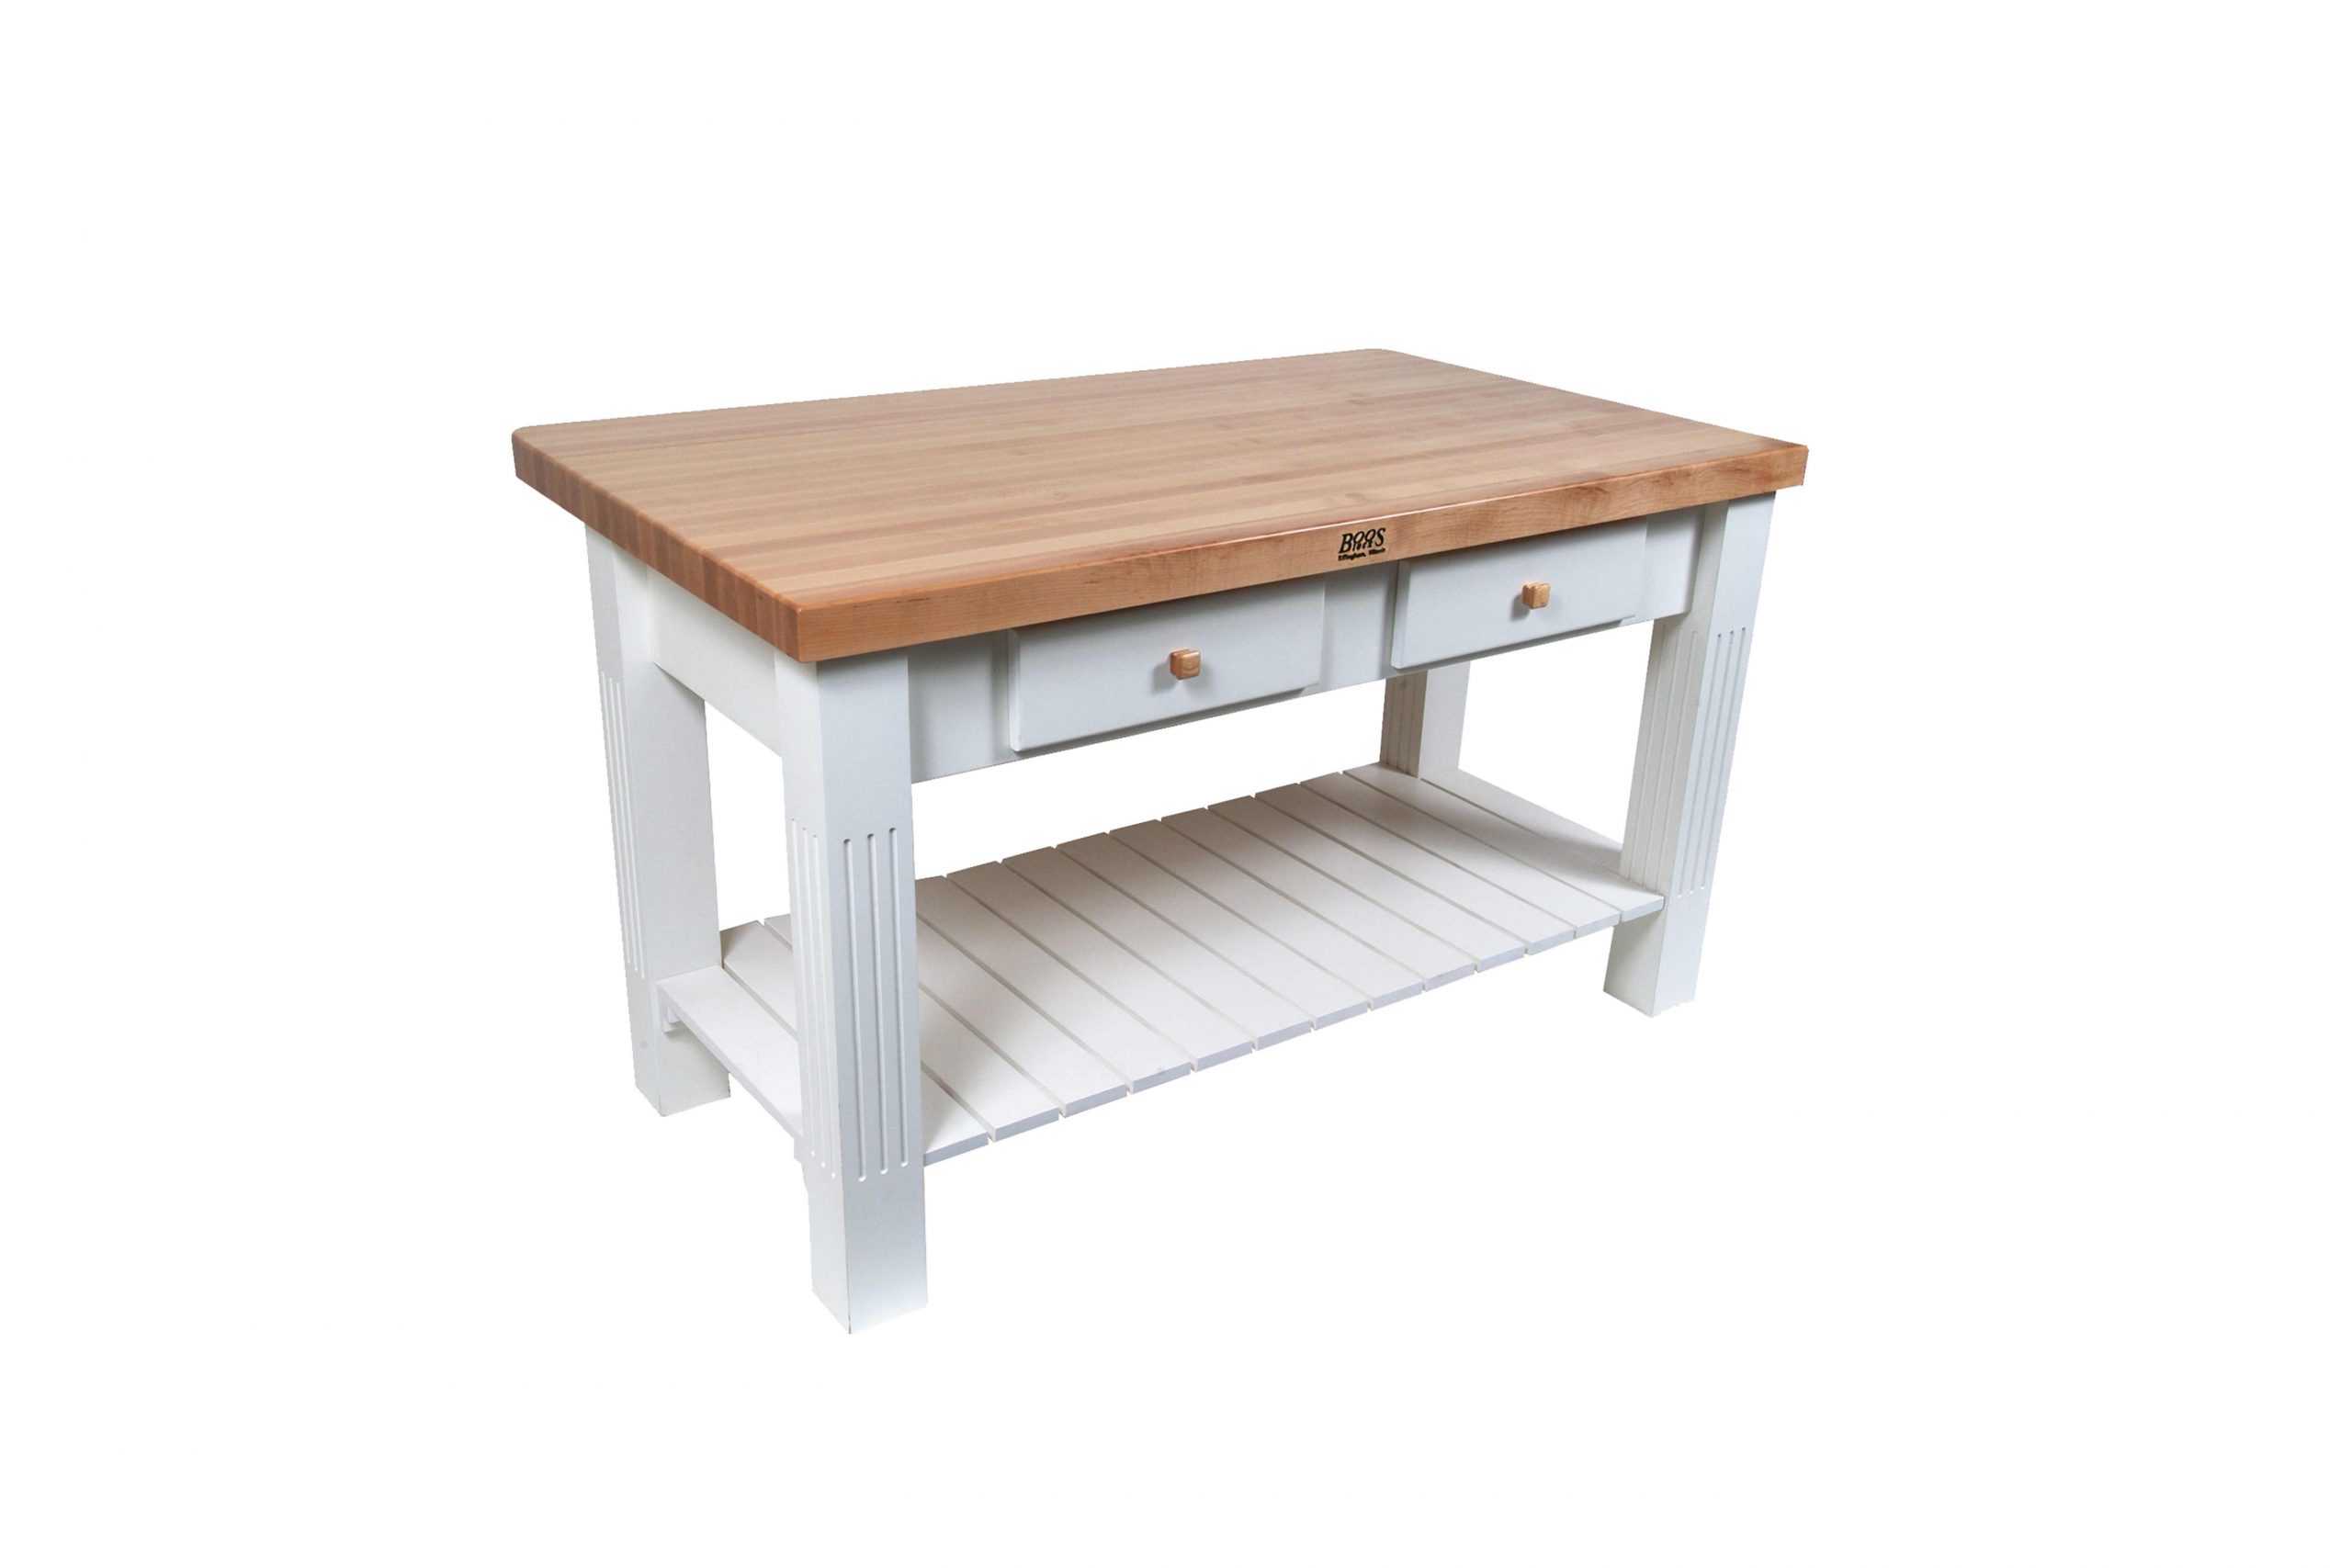 Boos® Maple Grazzi Table mit Langholzplatte inkl. umklappbarem Plattenteil (ca. 20cm), unterer Ablage und Utensilienschubladen 1